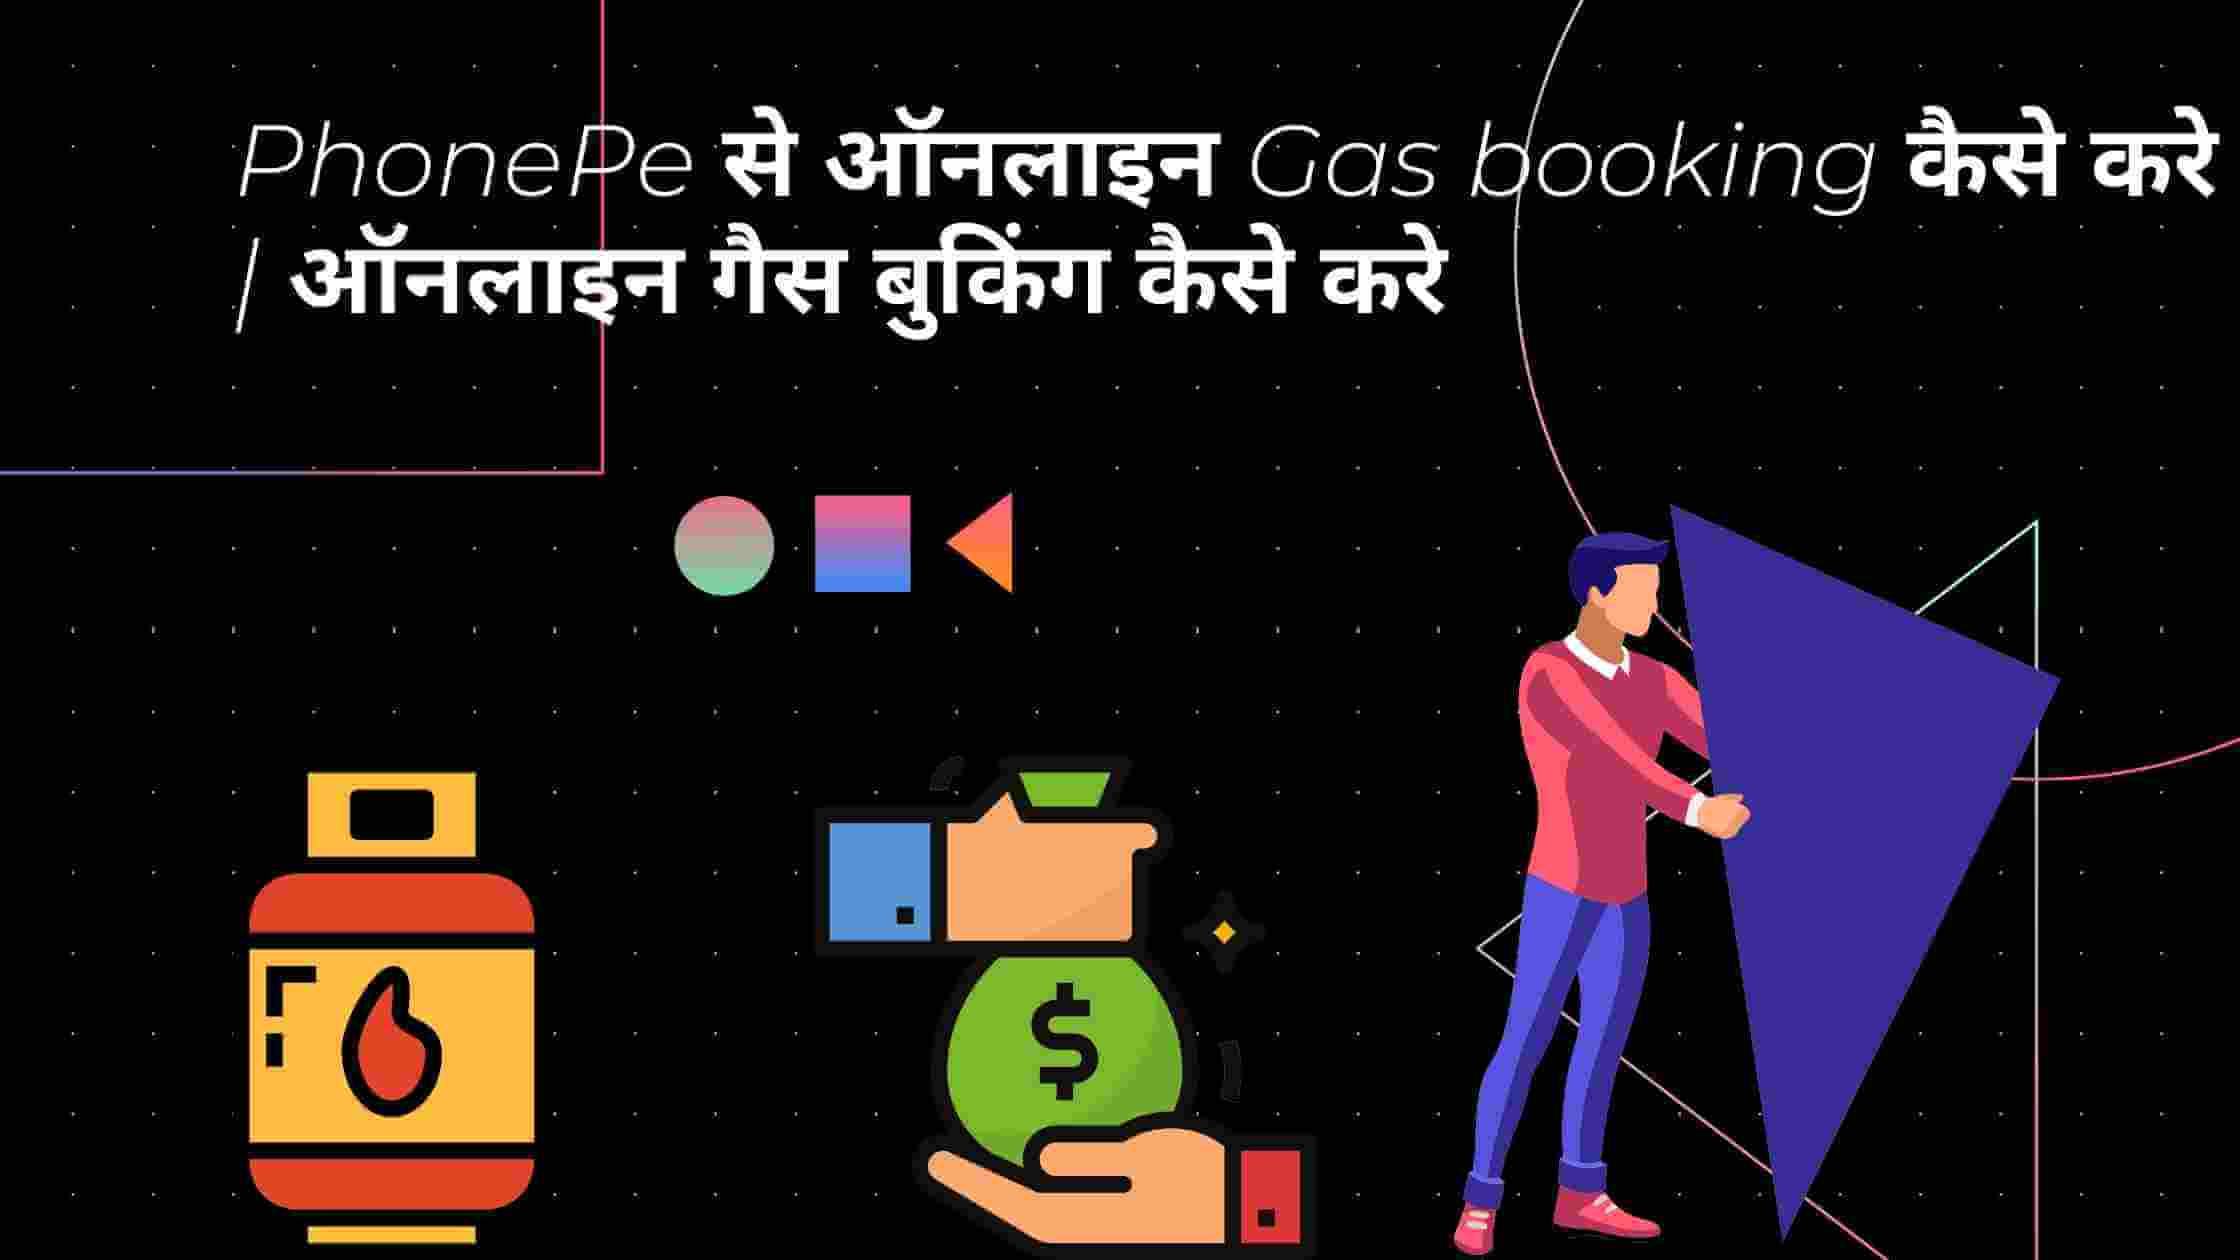 PhonePe-से-ऑनलाइन-Gas-booking-कैसे-करे-ऑनलाइन-गैस-बुकिंग-कैसे-करे-spaceinhindi